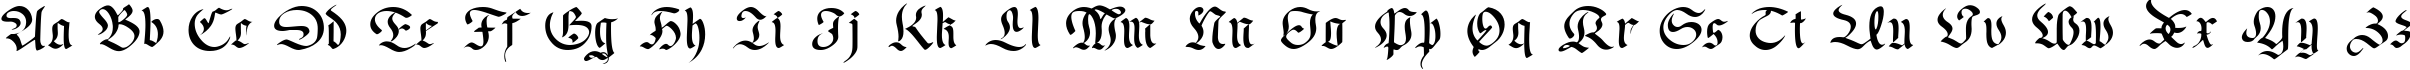 Пример написания английского алфавита шрифтом Faustus